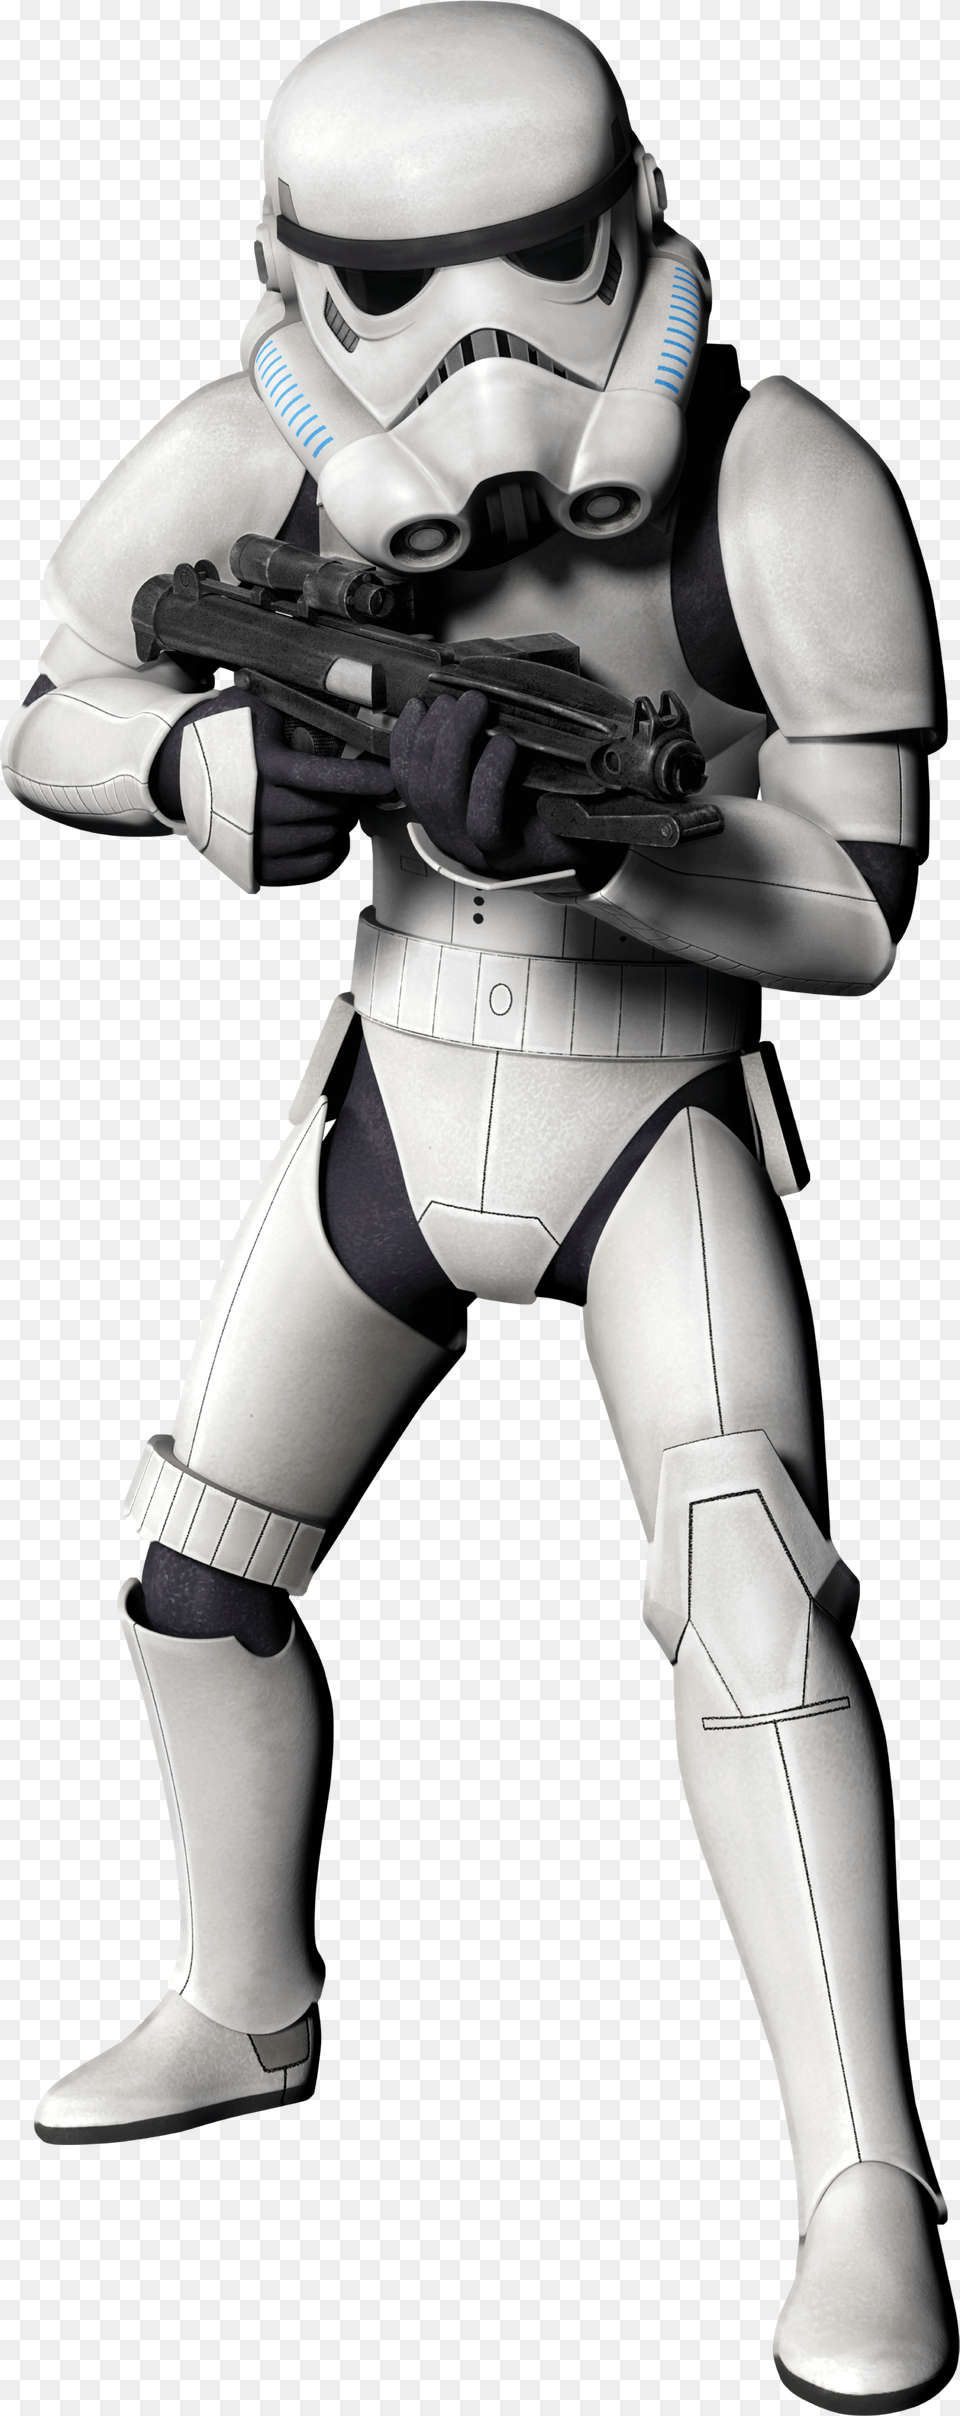 Download Toy Star Luke Football Skywalker Wars Hq Image Stormtrooper Background, Helmet, Robot, Adult, Female Free Transparent Png